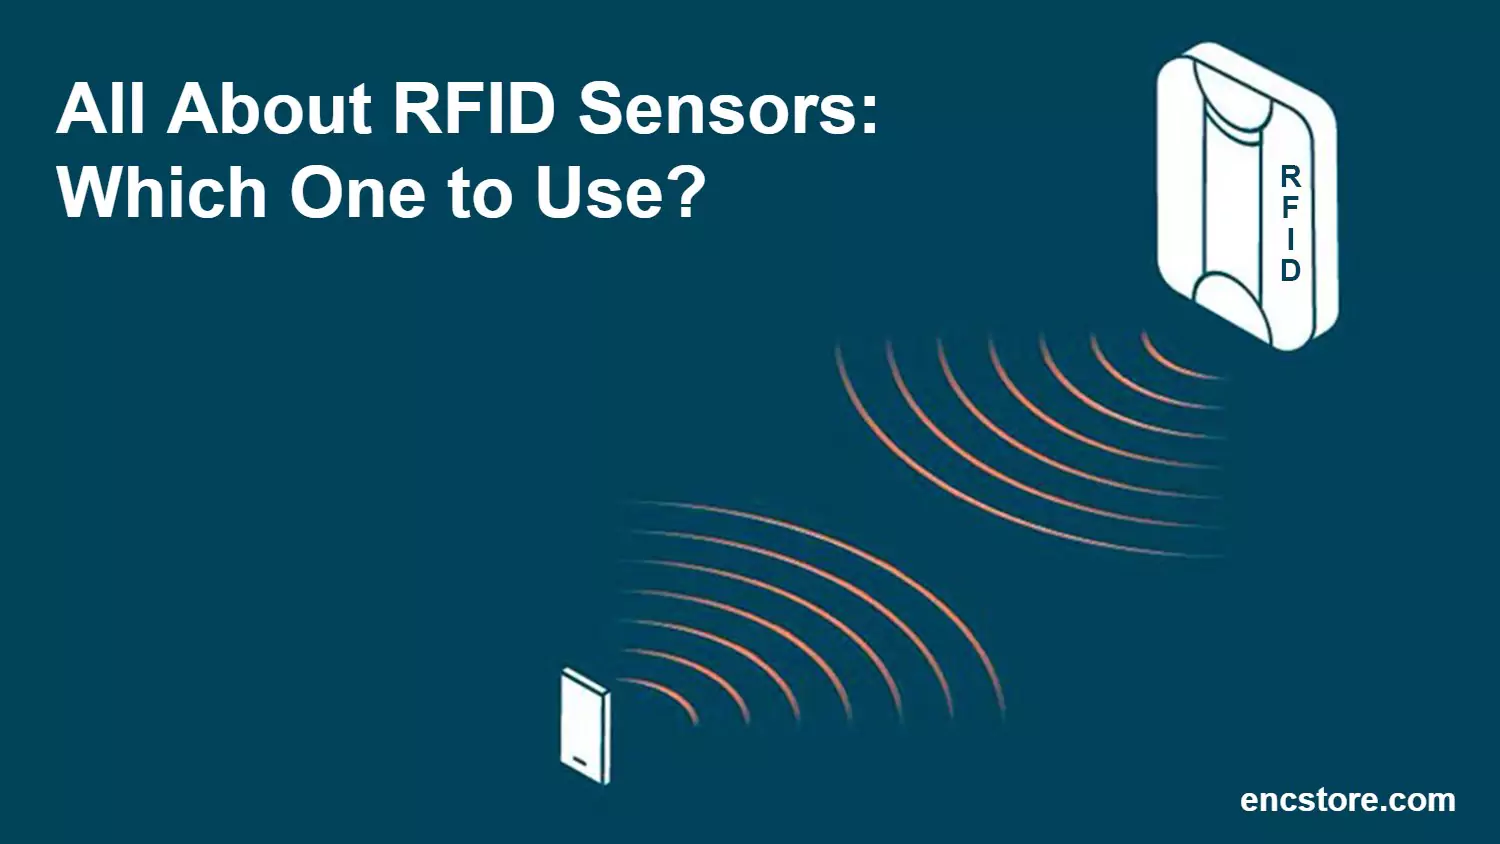 RFID Sensors